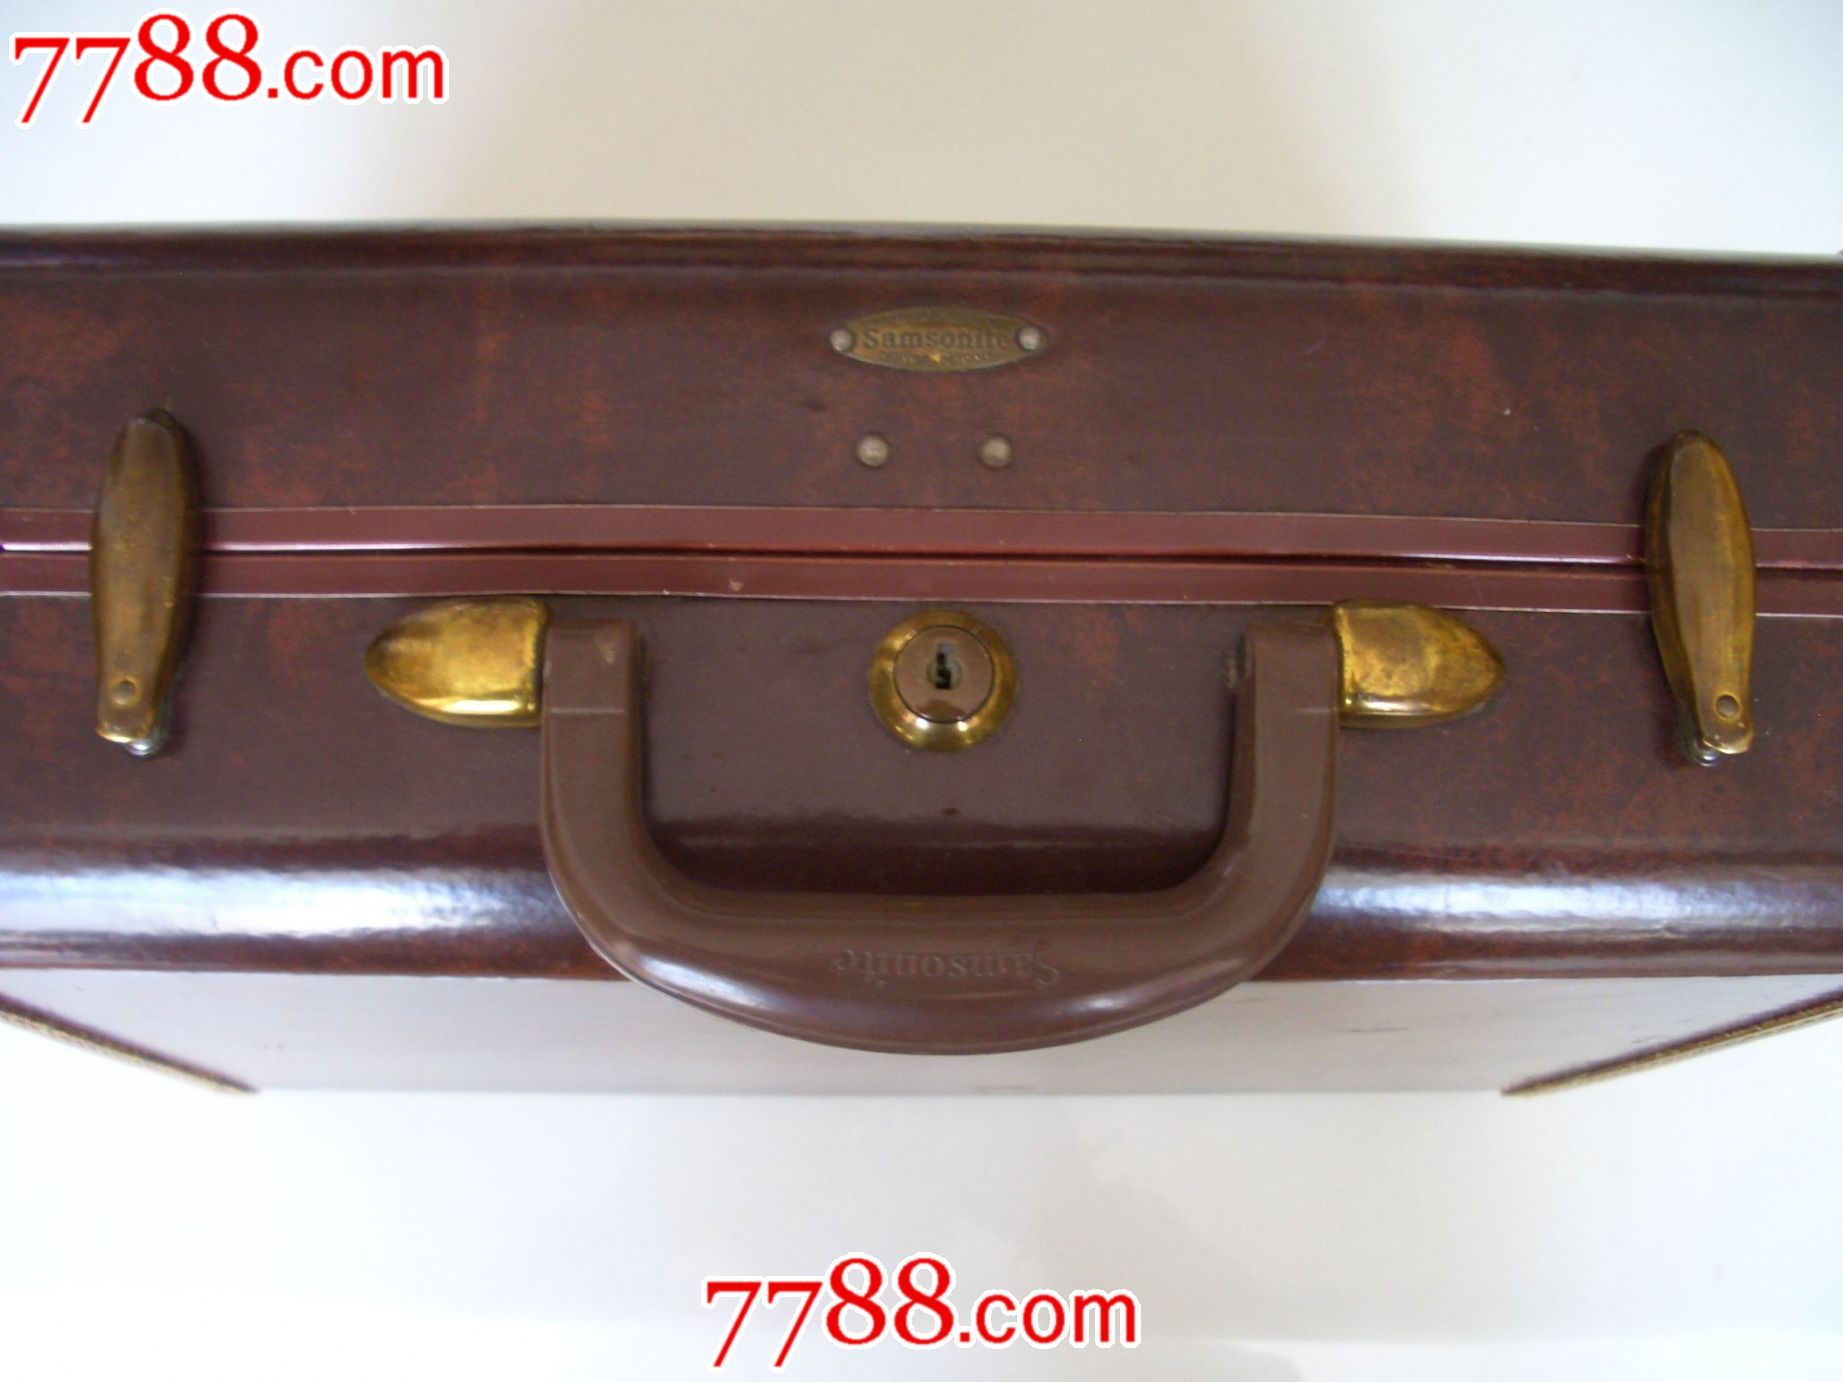 美国新秀丽古董手提皮箱-价格:1890元-se1742